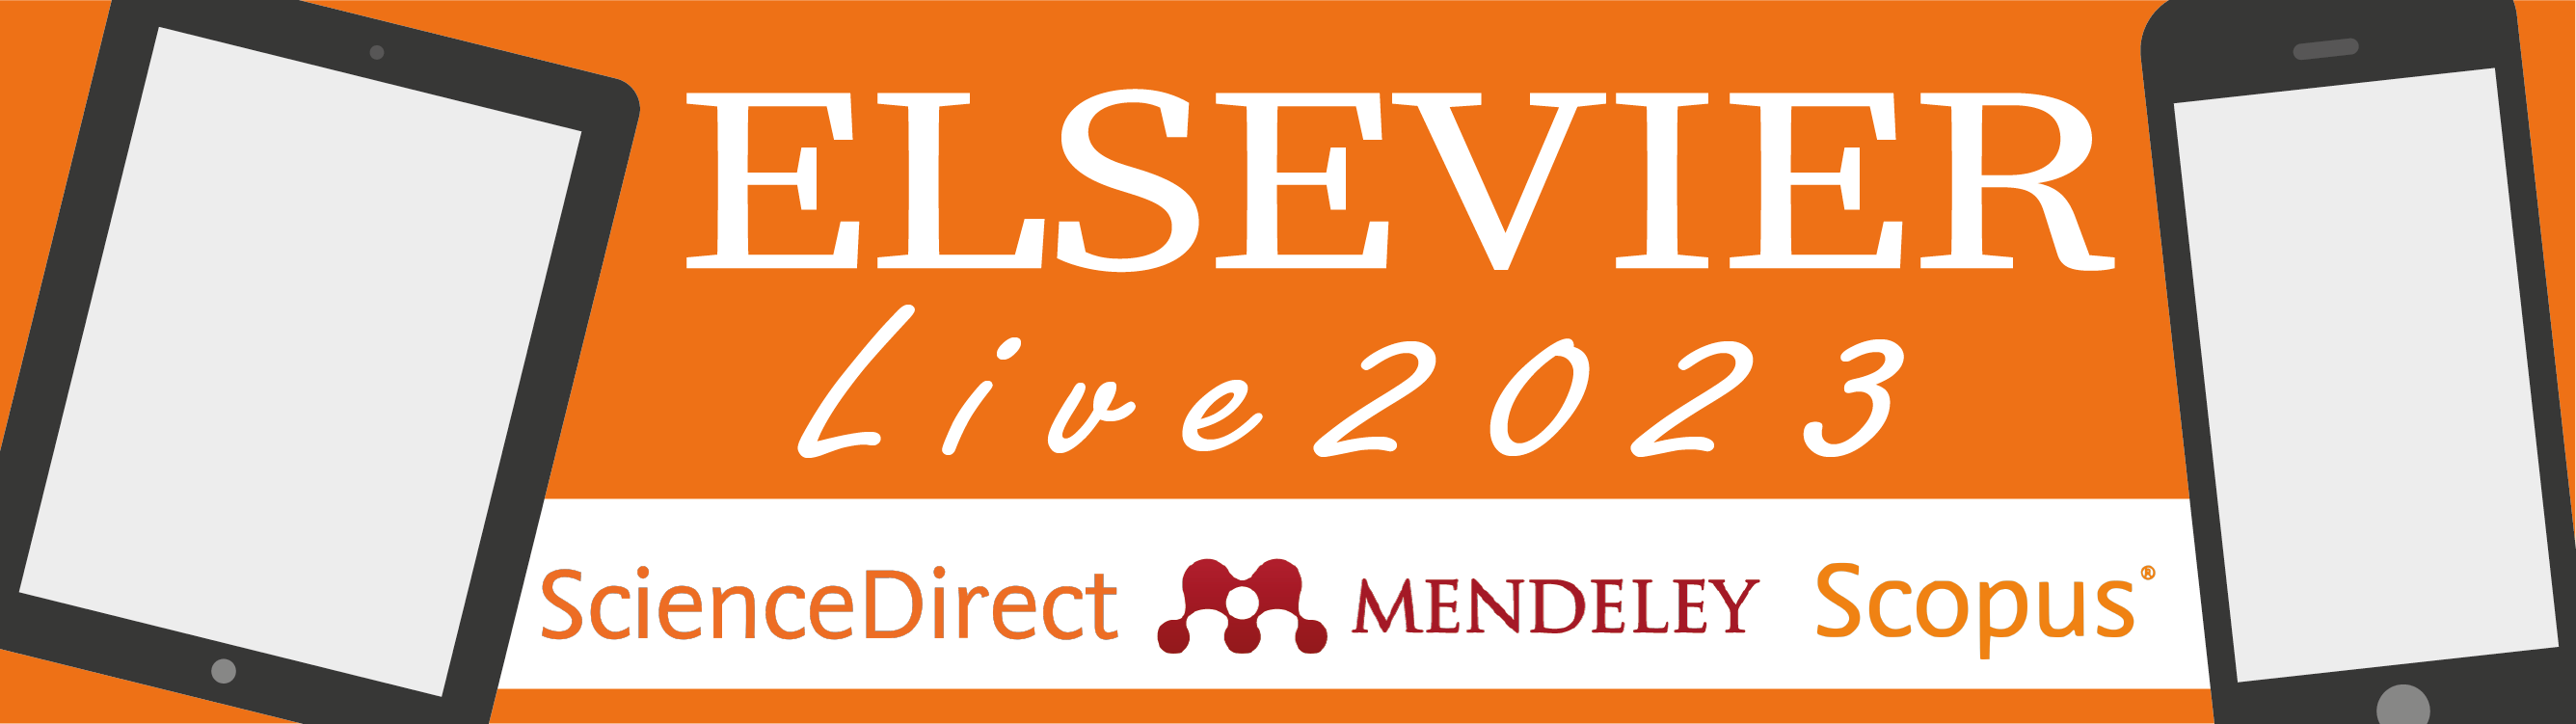 Webinar - Elsevier